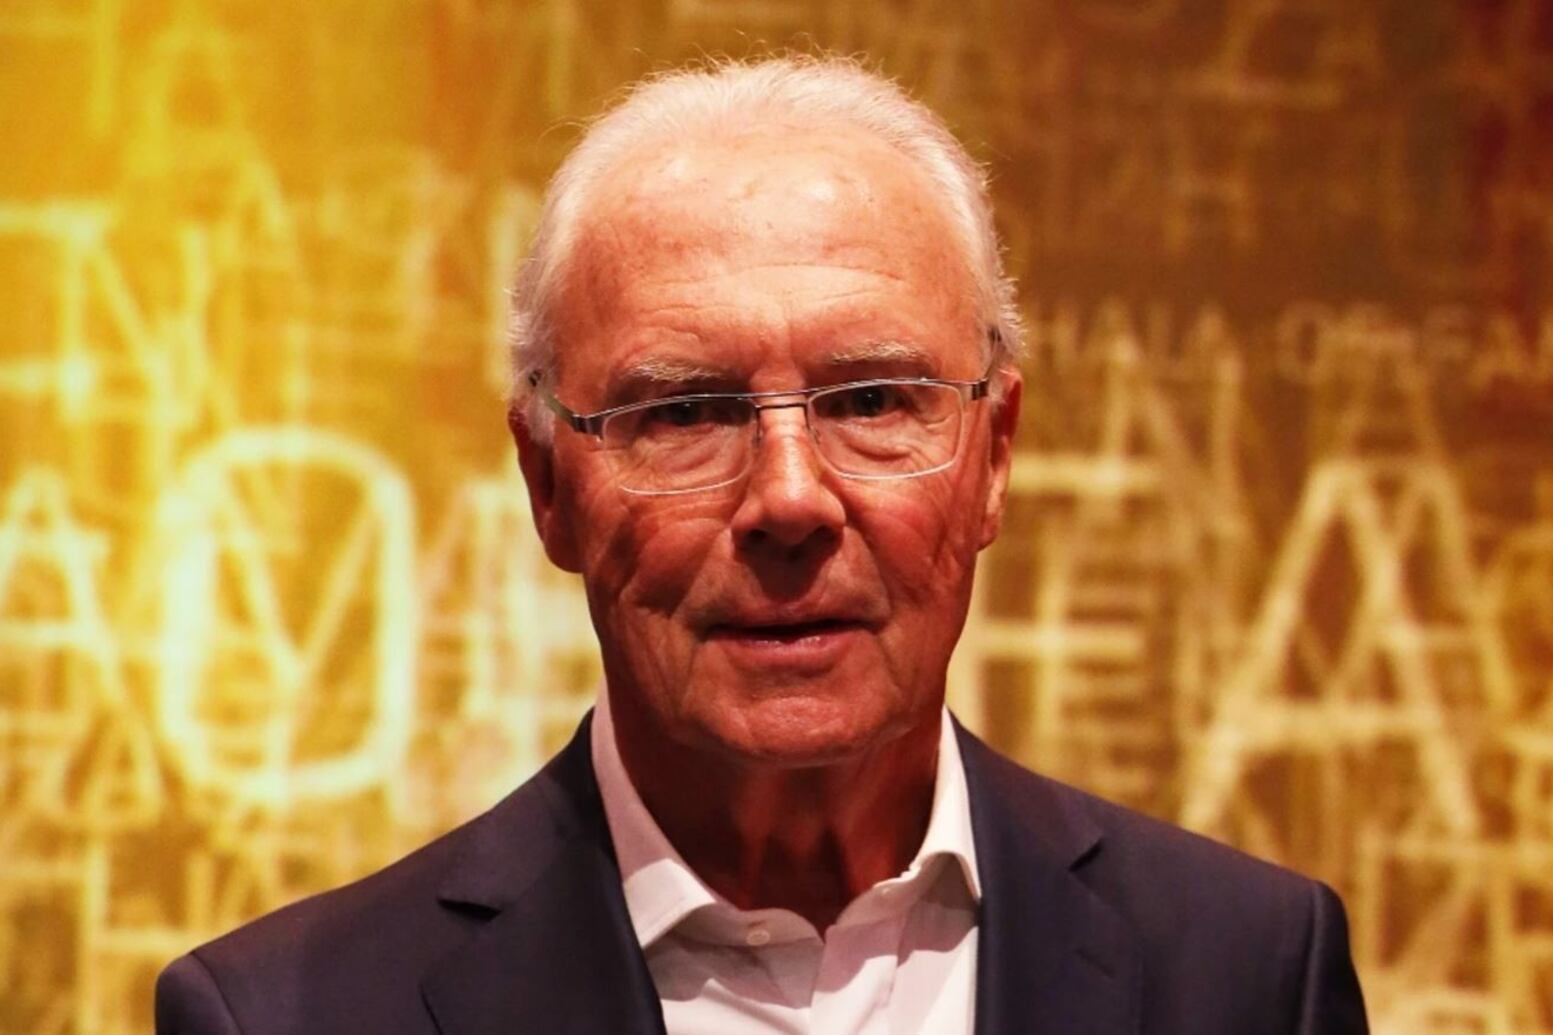 El fútbol mundial está de luto, muere el legendario jugador alemán Franz Beckenbauer